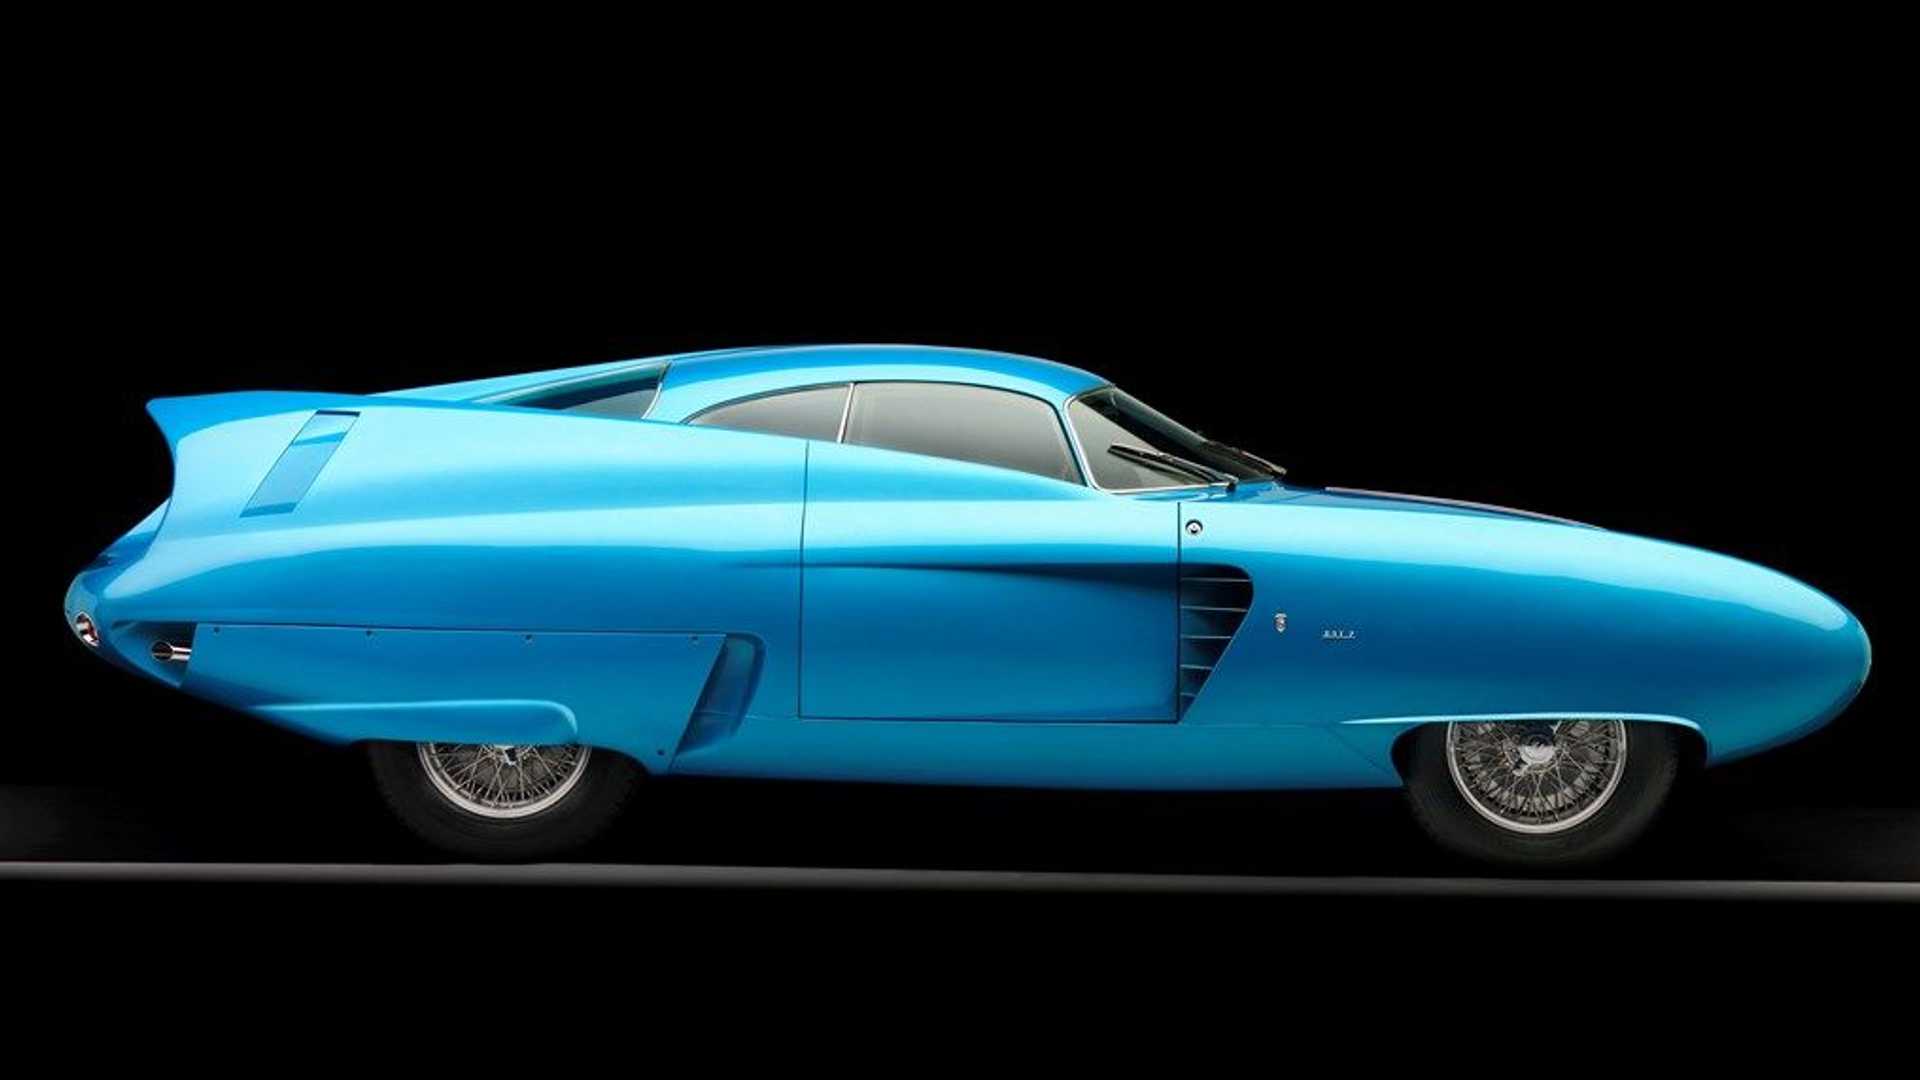 نمای جانبی خودروی مفهومی آلفا رومئو / Alfa Romeo B.A.T. Concept Car با رنگ آبی